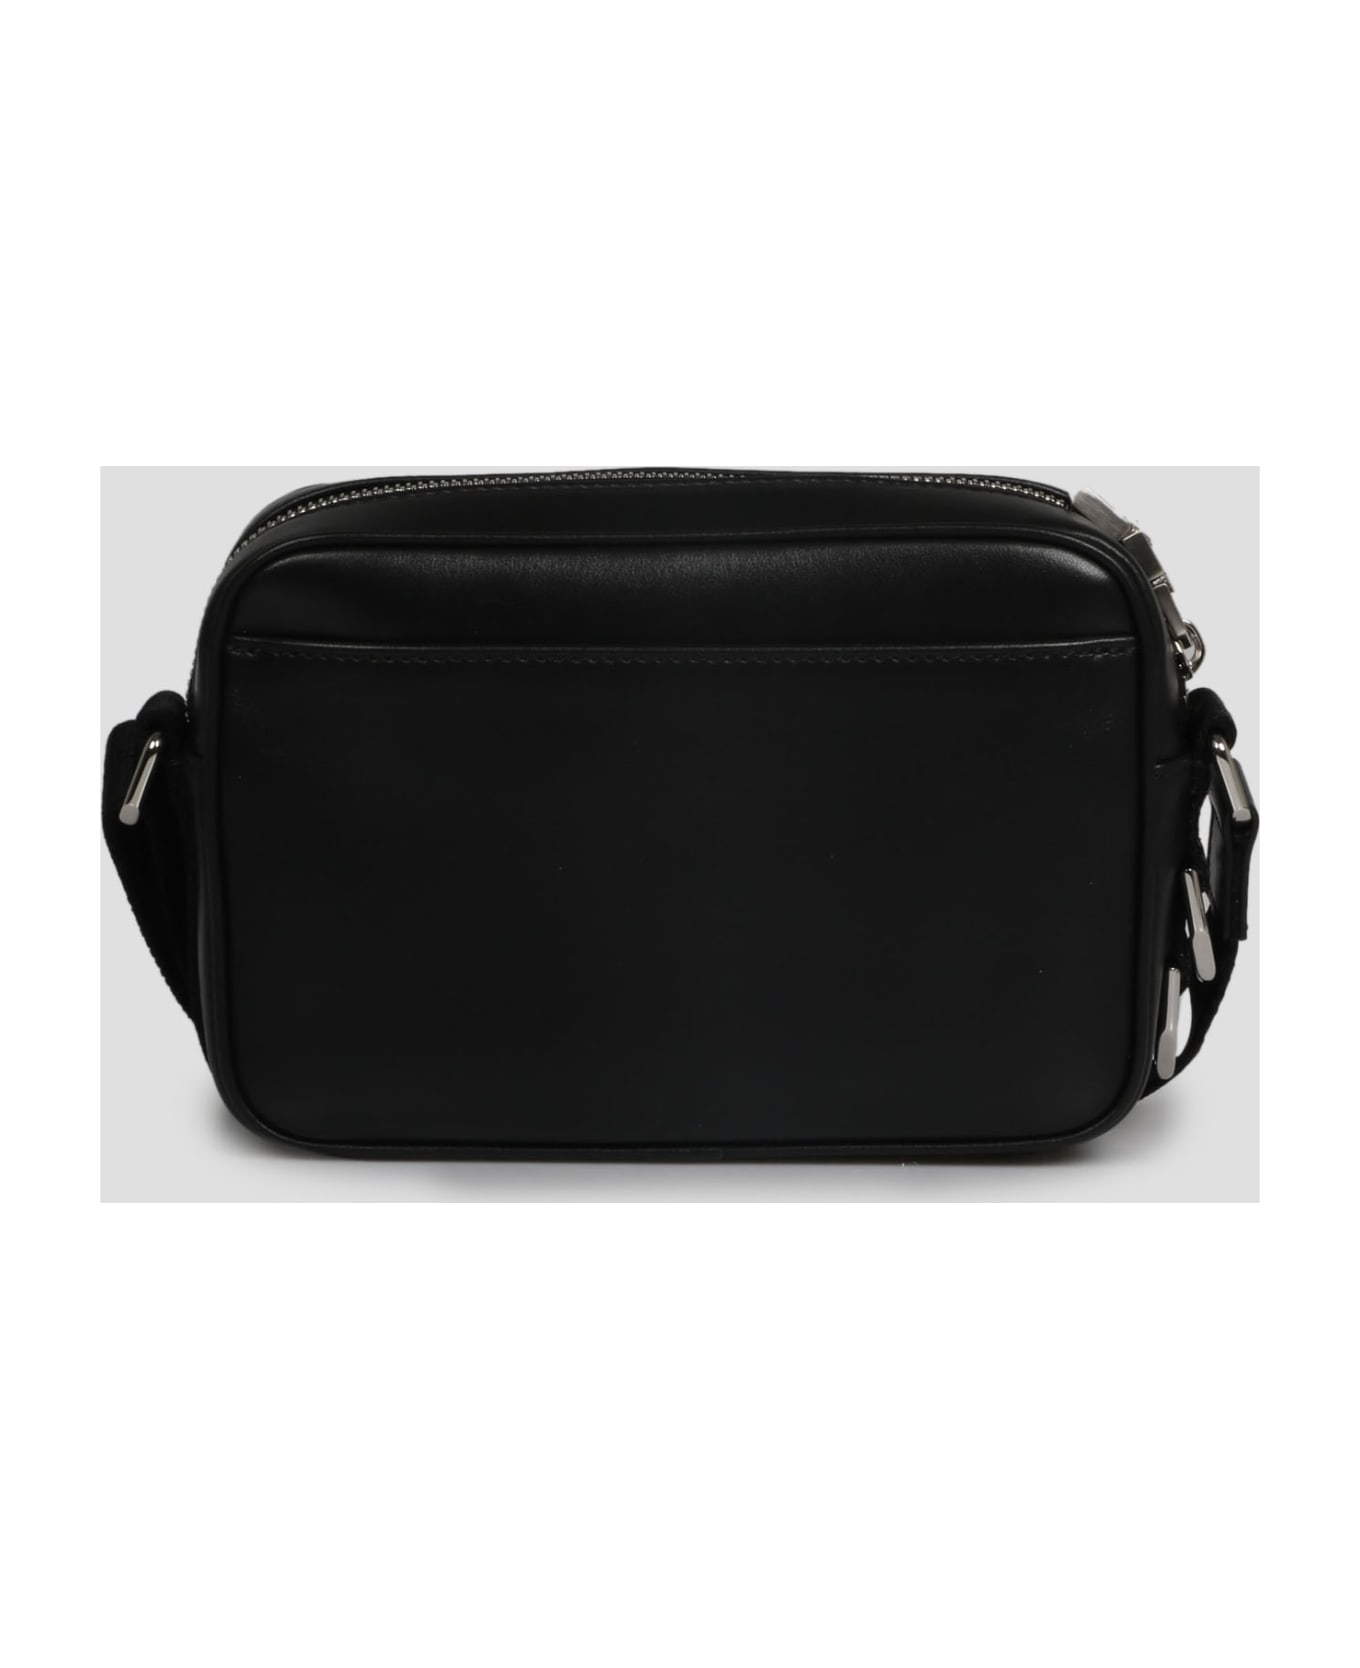 Givenchy Camera Bag - Black